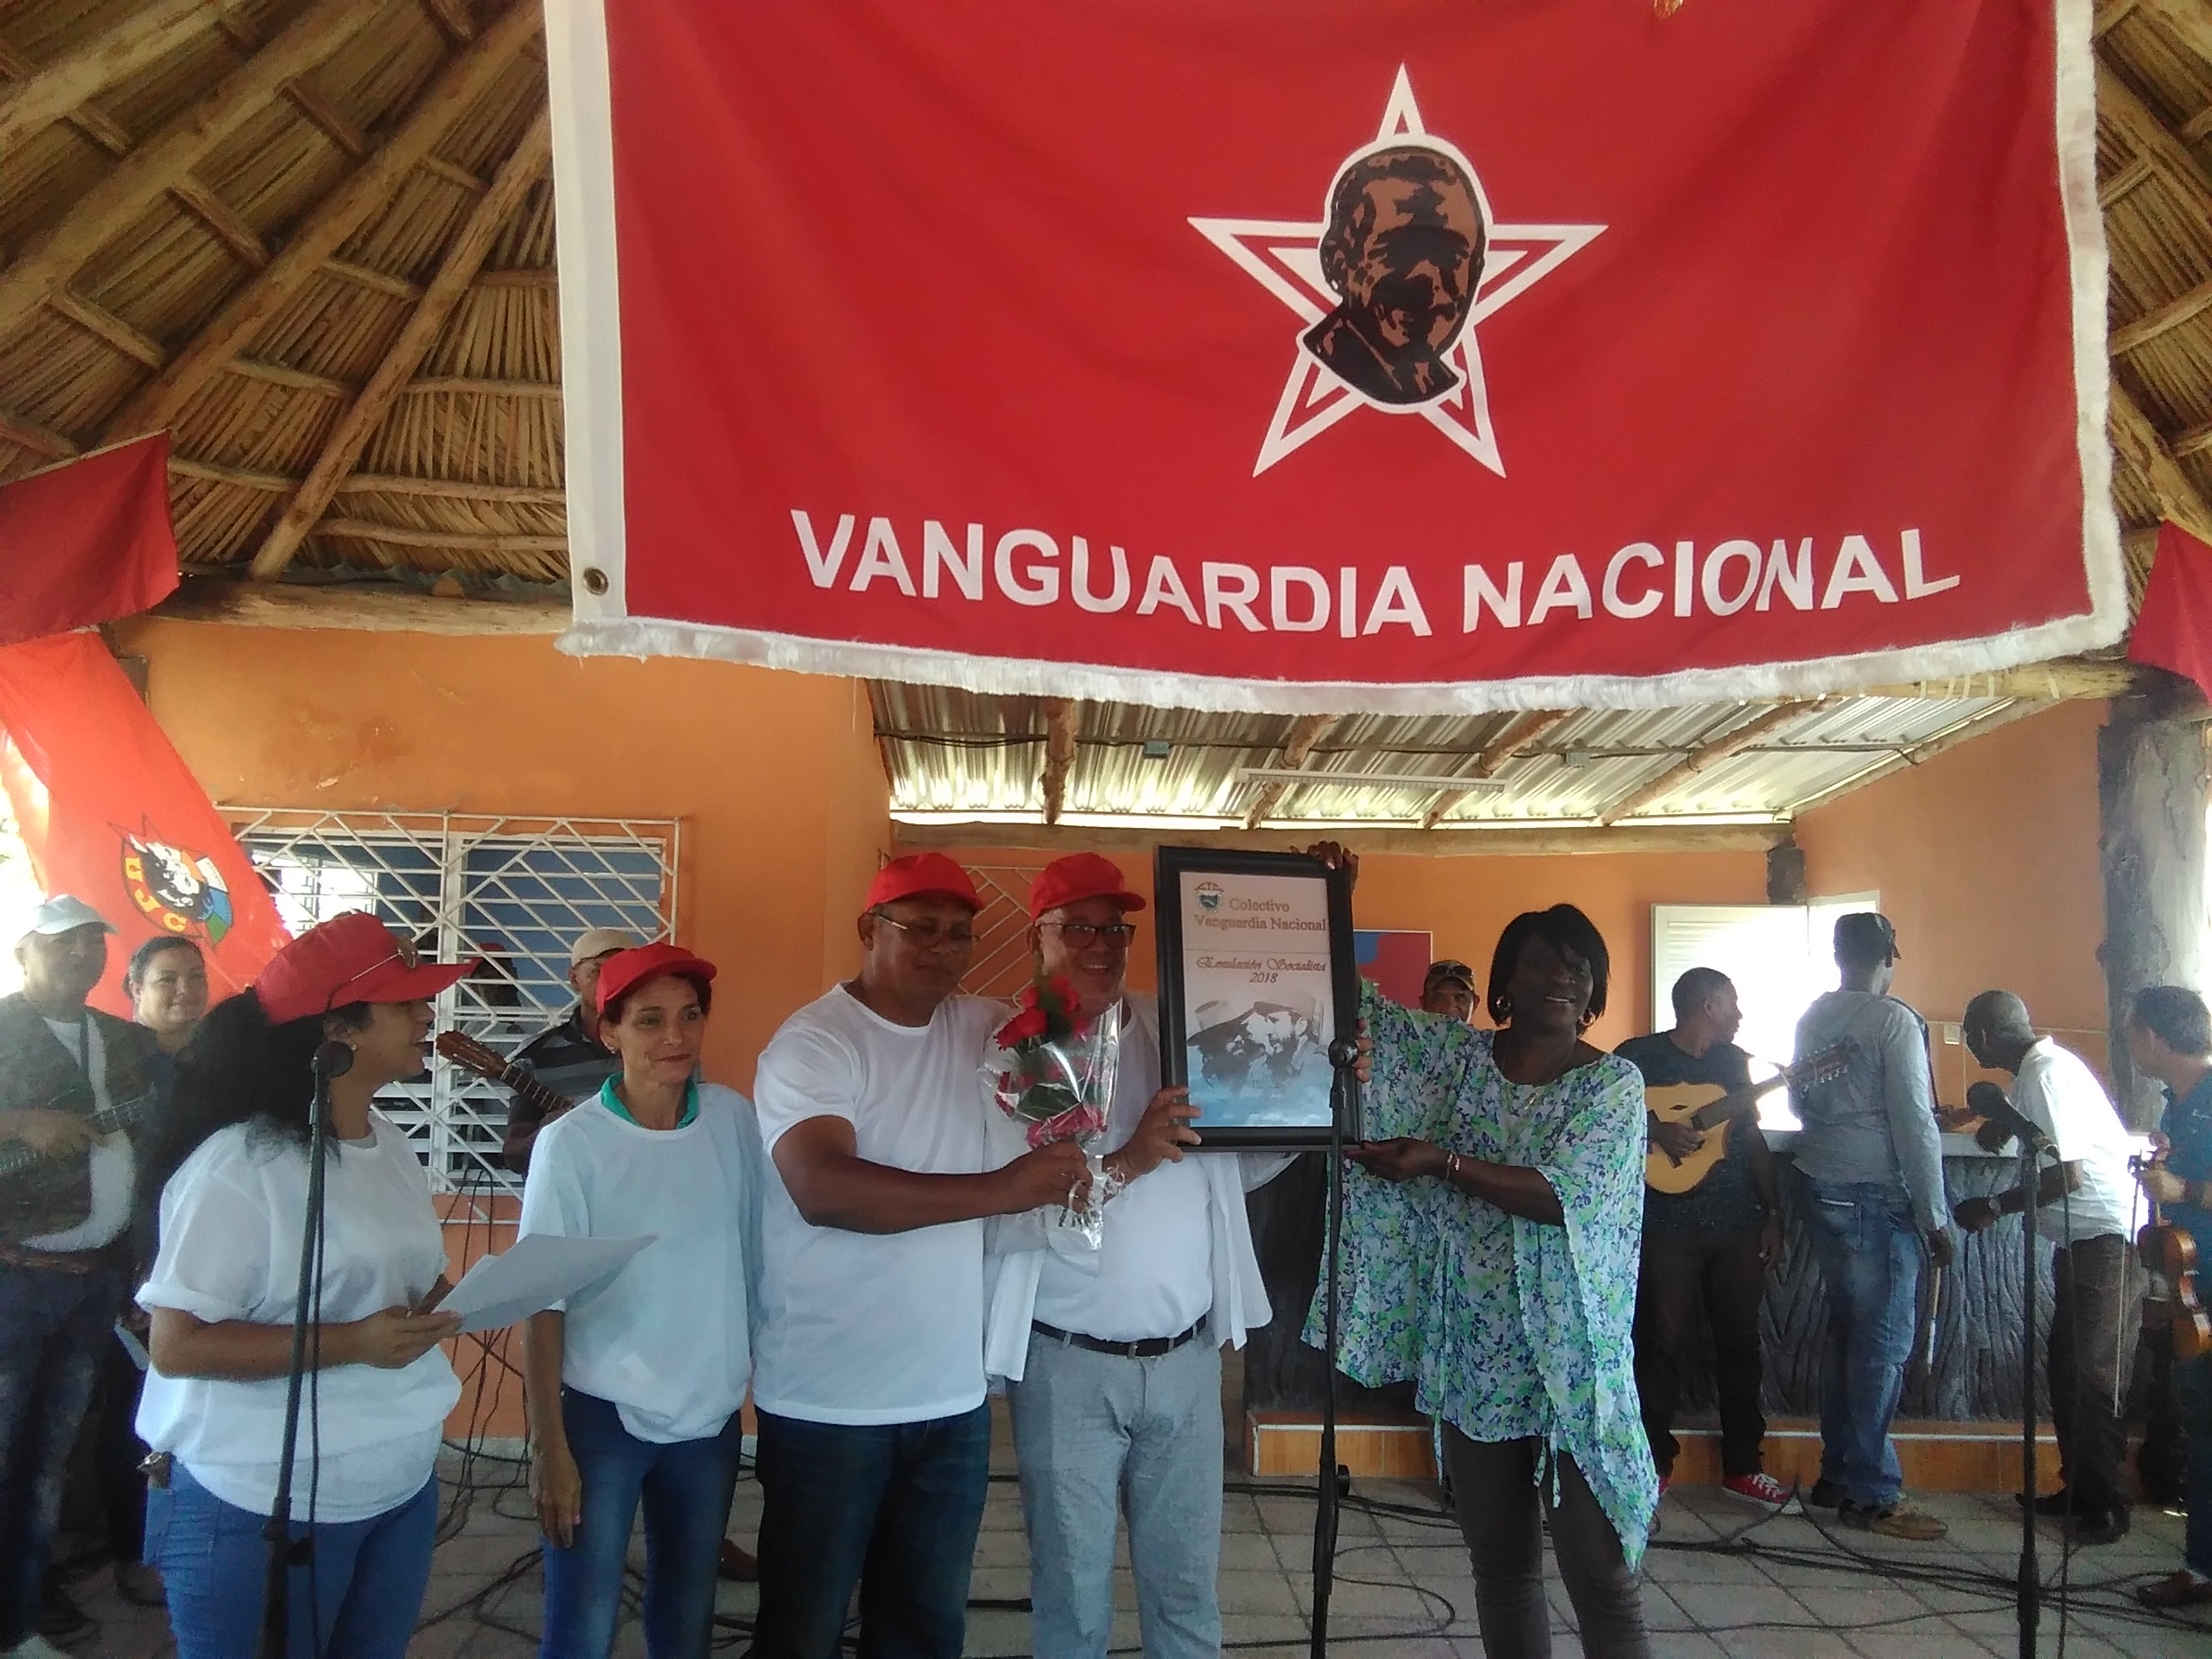 El colectivo de Ciegoplast, del Sindicato de la Construcción, recibe el certificado que lo acredita como colectivo Vanguardia Nacional, otorgado por la Central de Trabajadores de Cuba. Foto: José Luis Martínez Alejo